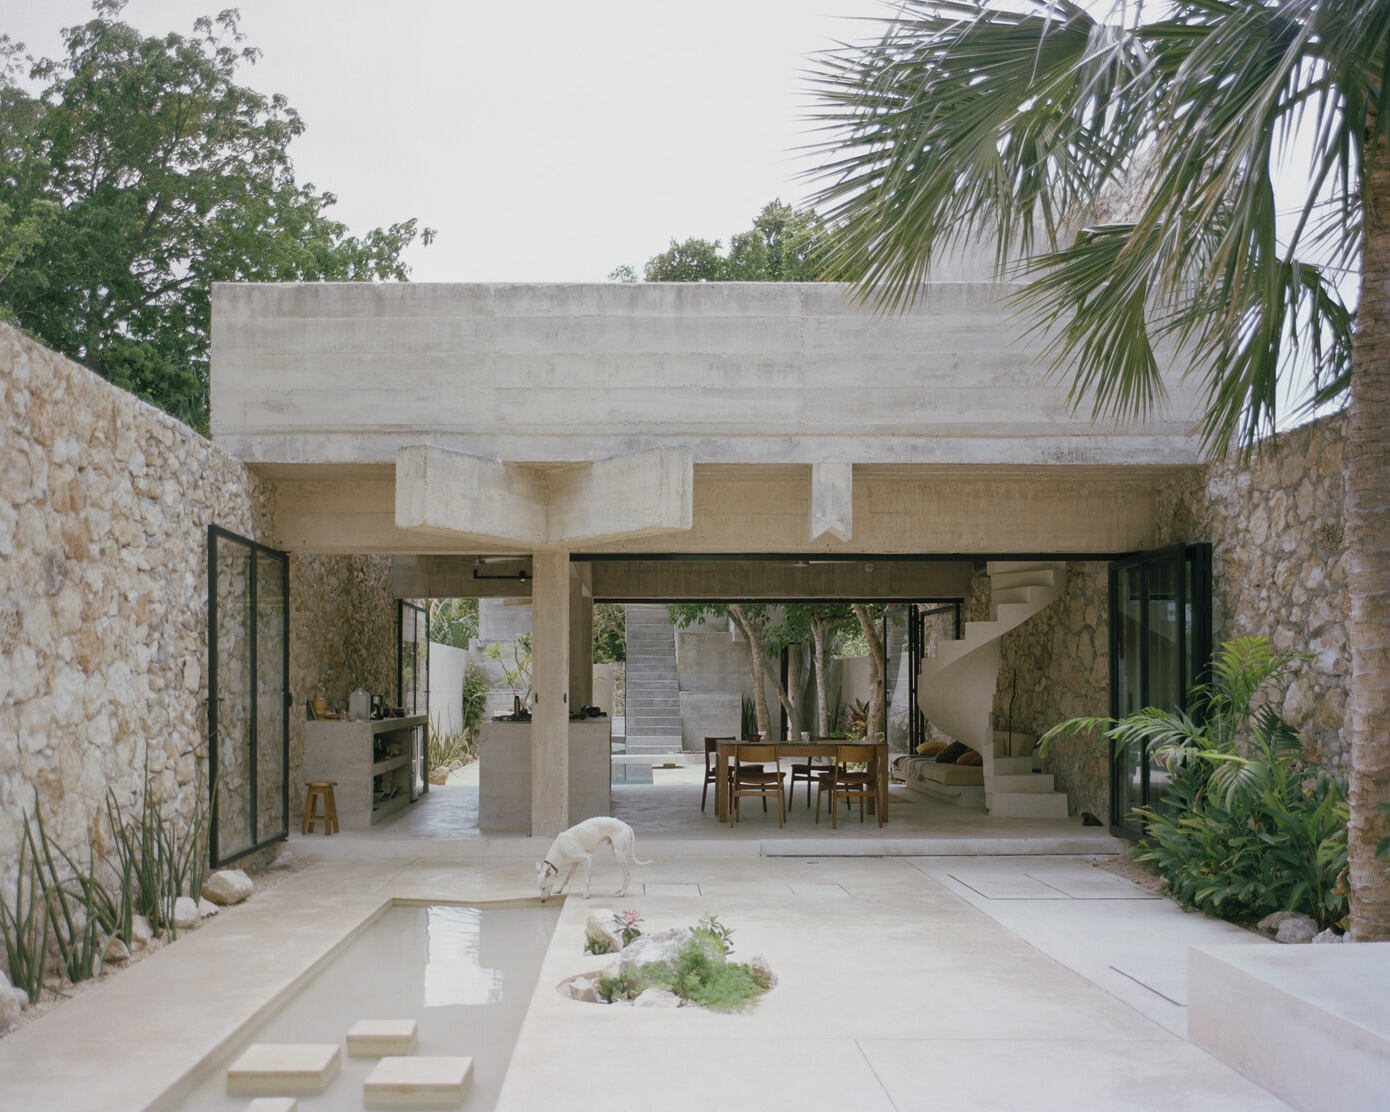 Casa en los Cocos: Mérida’s Modern Concrete Beacon